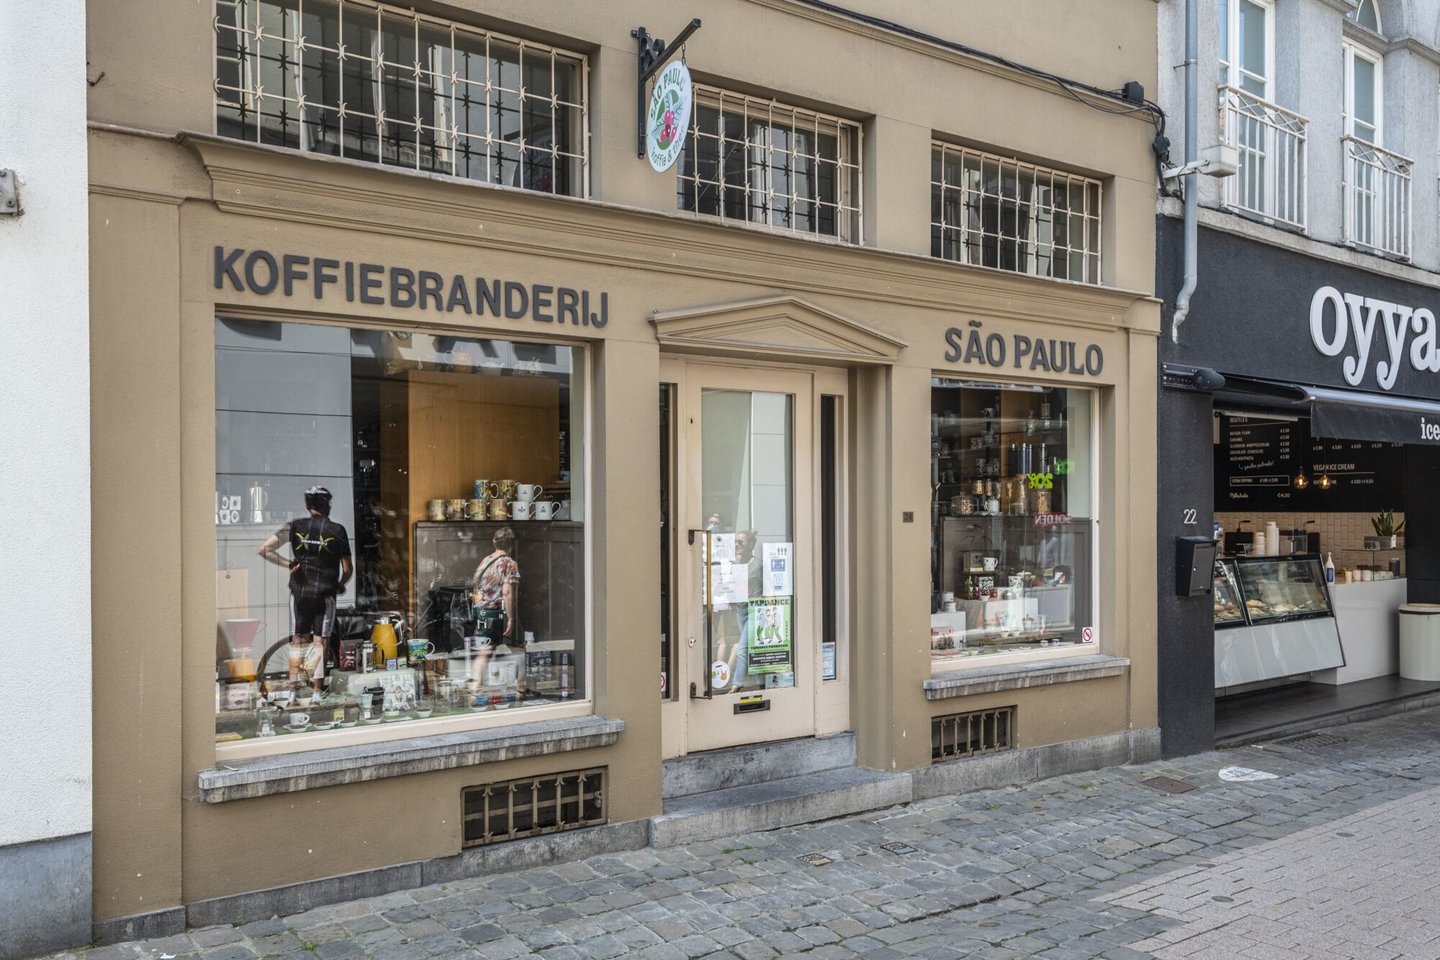 Etalage van koffiebranderij en thee São Paulo in Gent